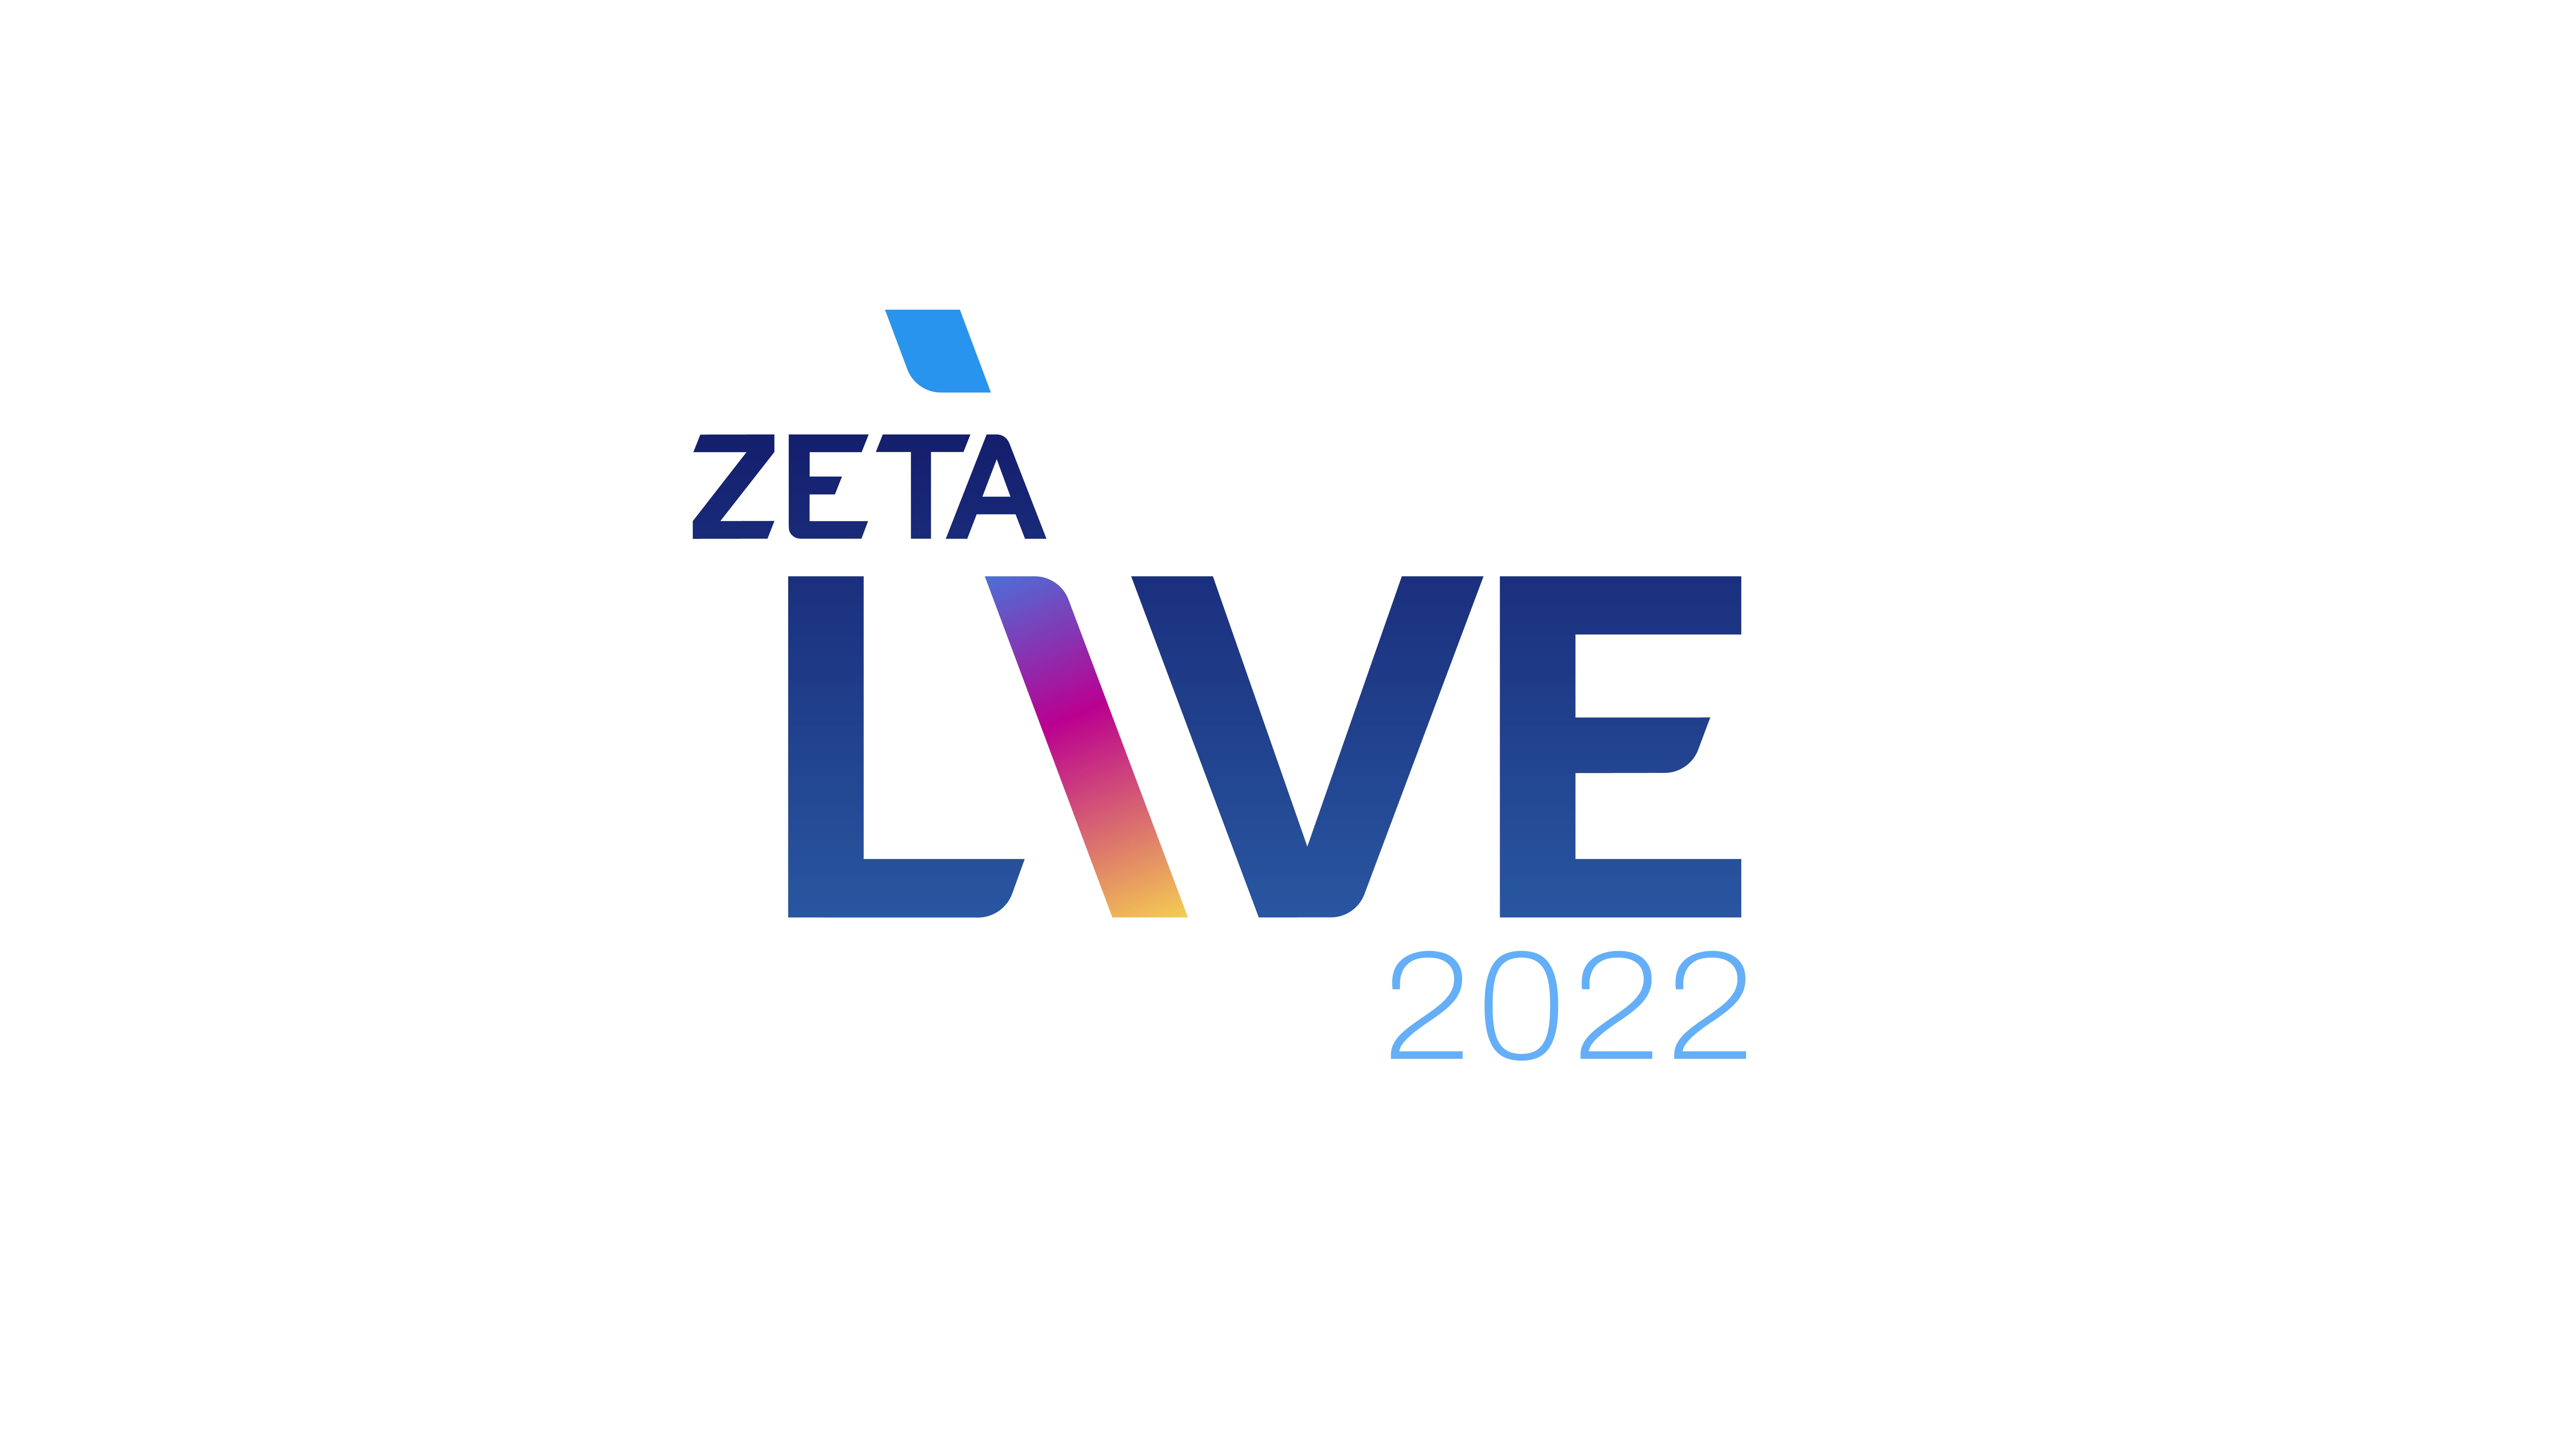 zeta live logo-2022 - blue